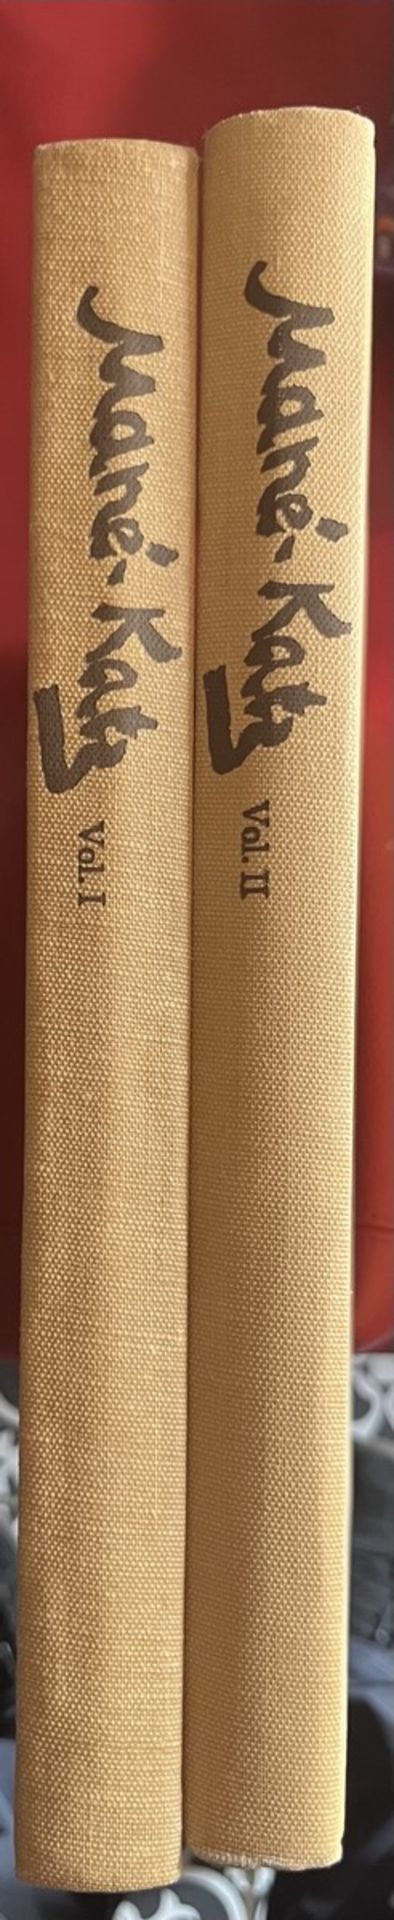 [MANE- KATZ]- l’Oeuvre complète, 2 vols. 1894-1962 .L’Oeuvre complète (2 Volumes Set) - Image 4 of 6